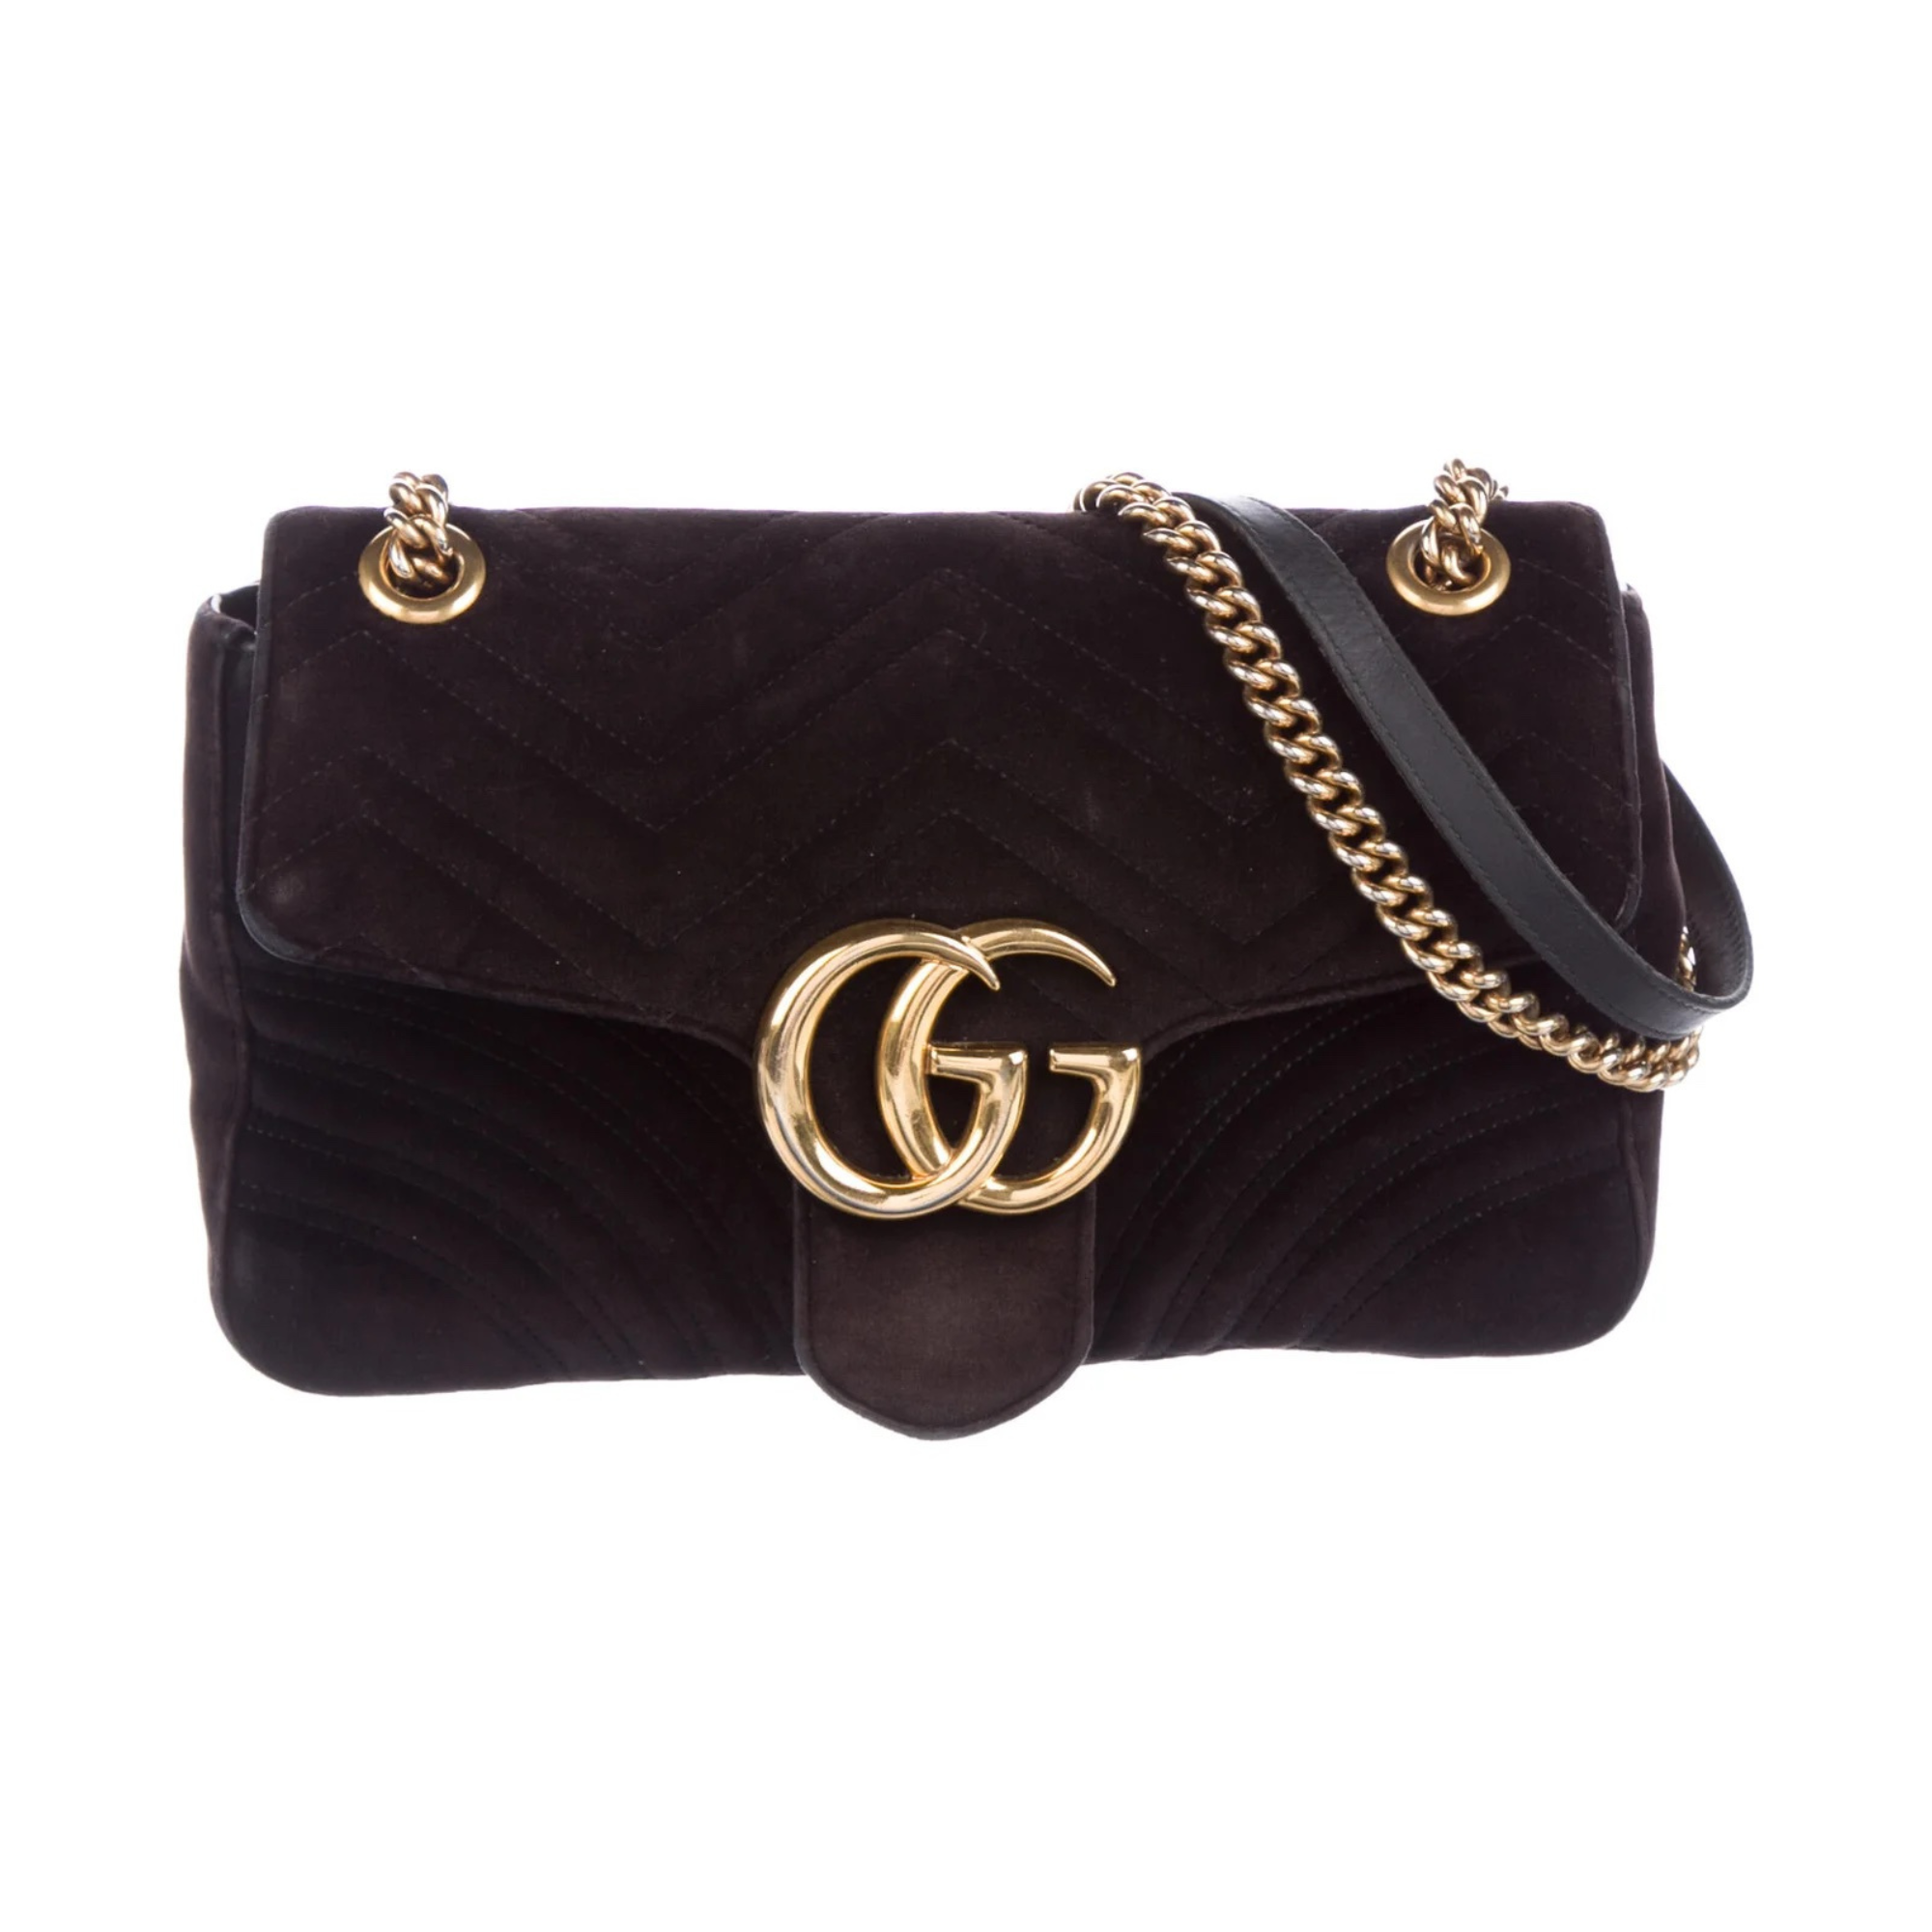 Black Leather GG Marmont Small Matelassé Shoulder Bag